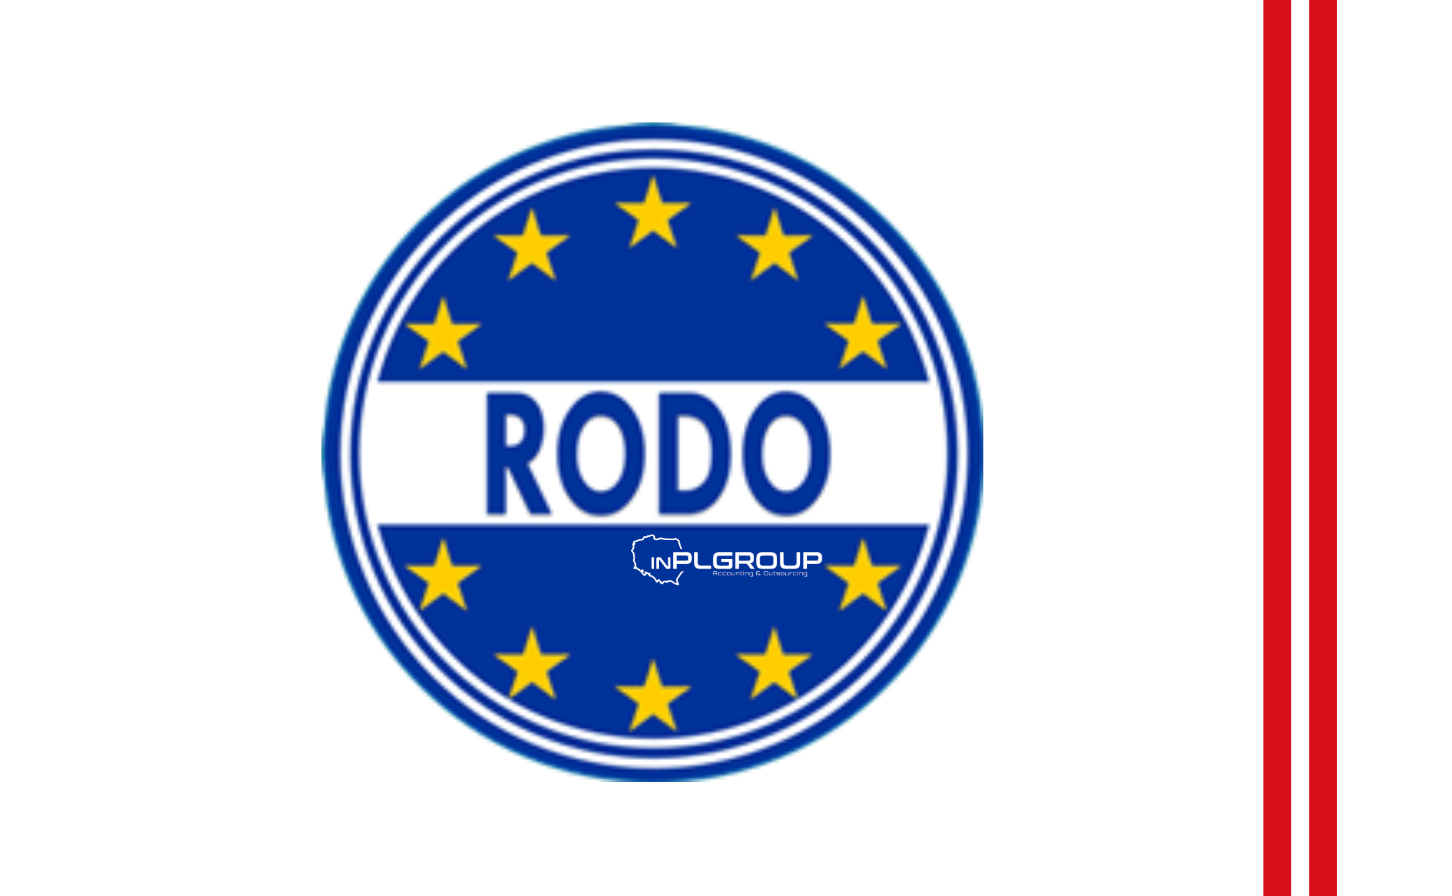 Документация сотрудников в соответствии с RODO - новые обязательства для работодателей 2019